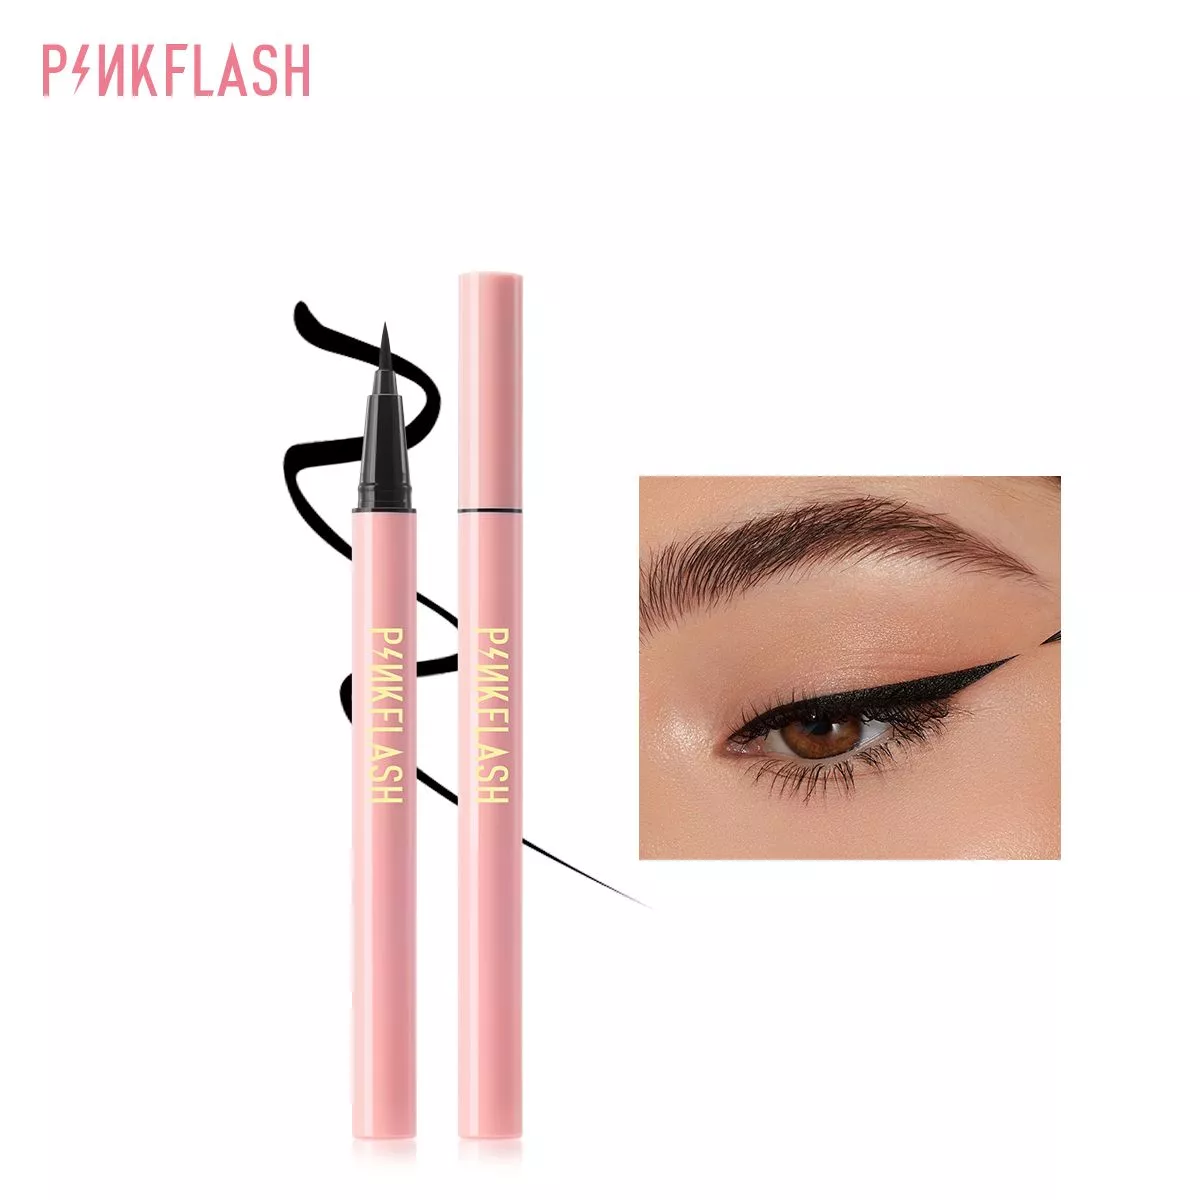 Focallure Pink Flash - E01 Lock All Day Eyeliner (Black) Cloud Shop Bd